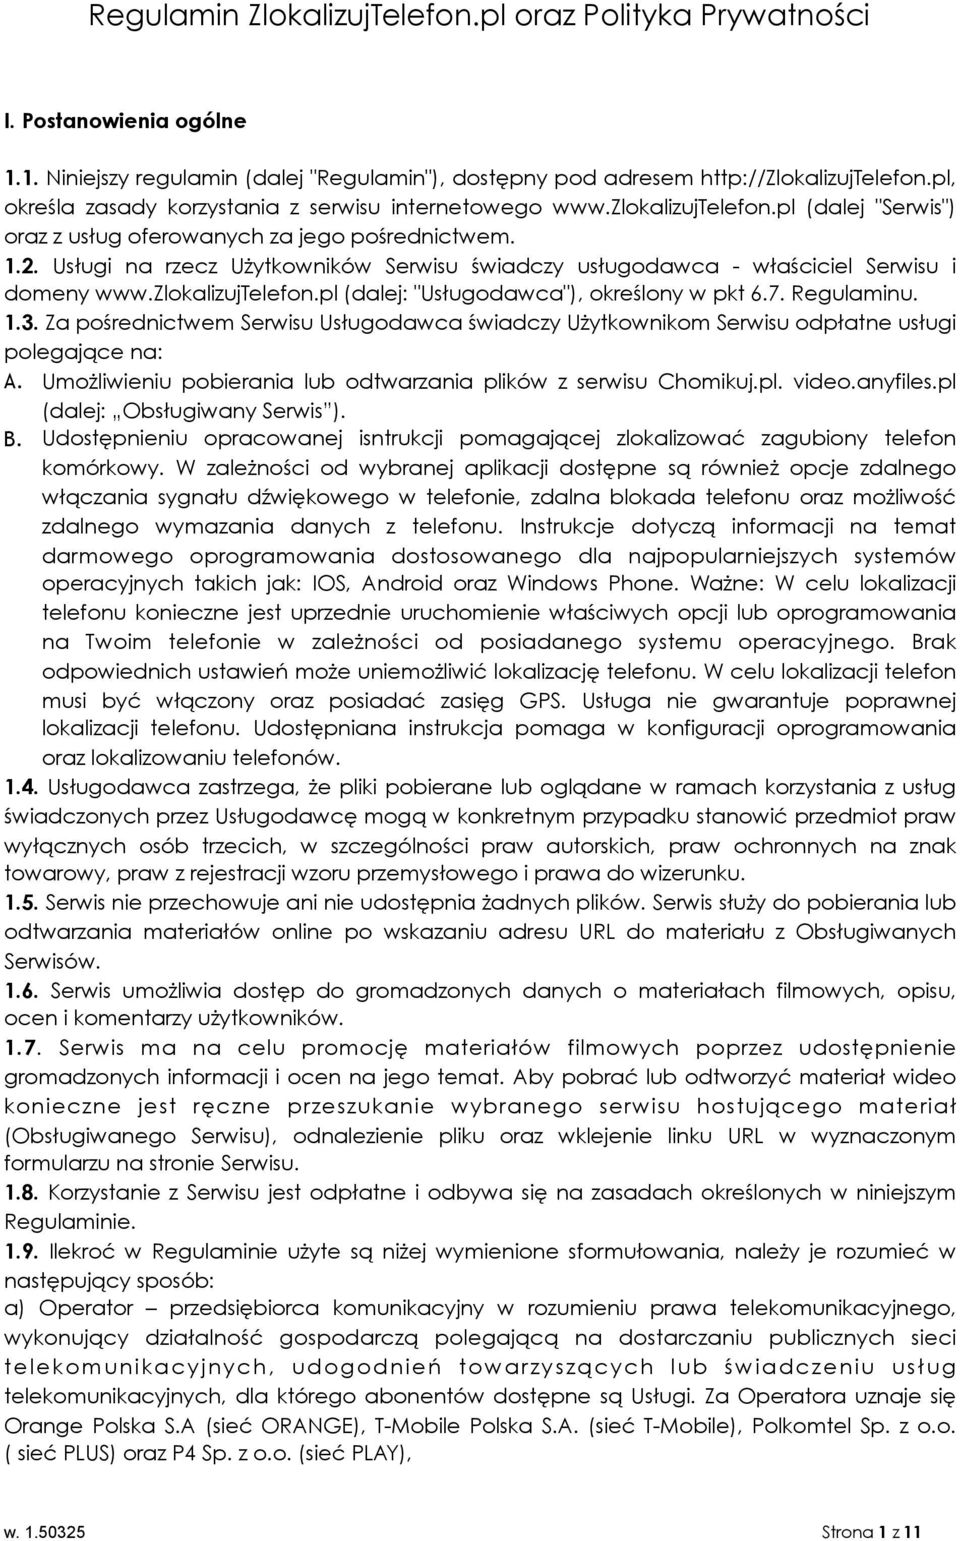 Usługi na rzecz Użytkowników Serwisu świadczy usługodawca - właściciel Serwisu i domeny www.zlokalizujtelefon.pl (dalej: "Usługodawca"), określony w pkt 6.7. Regulaminu. 1.3.